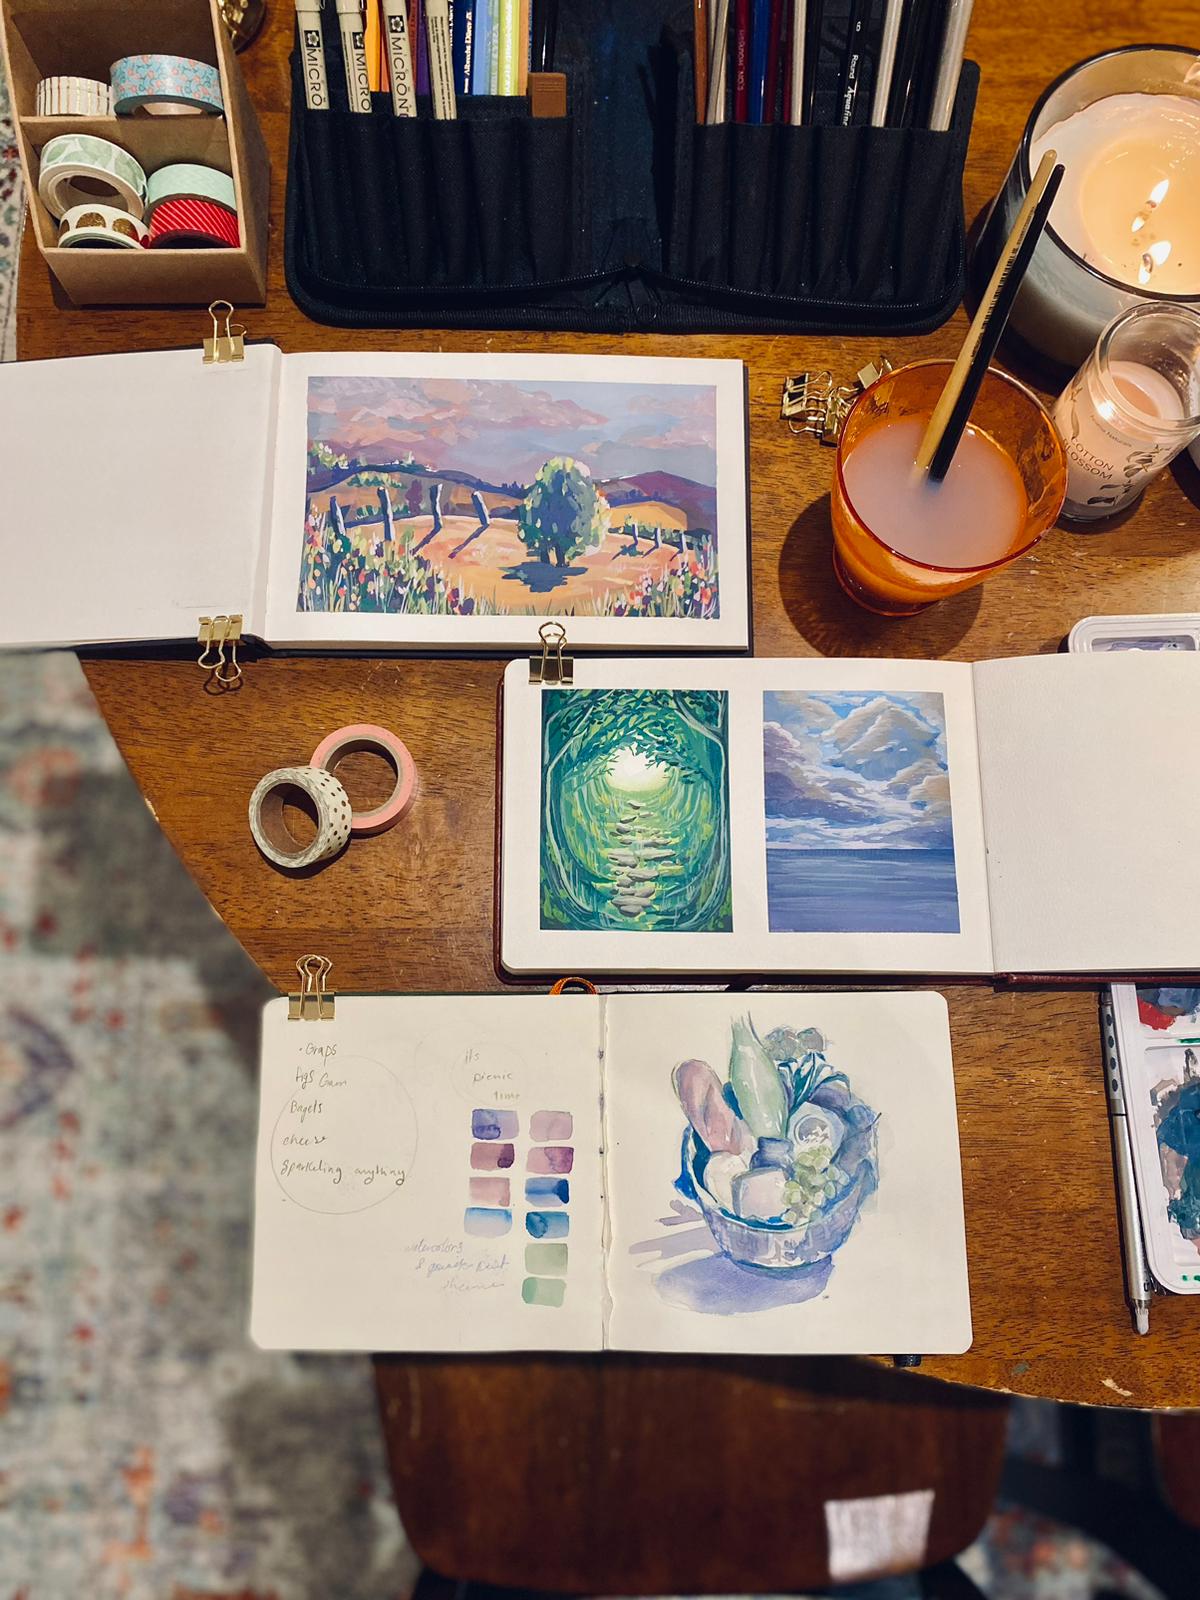 مواد الفنانة جوهرة وفرشاة وكتيبات الرسم على طاولة قبل بدء ورش العمل الاستكشافية في قمة TED باللغة العربية.